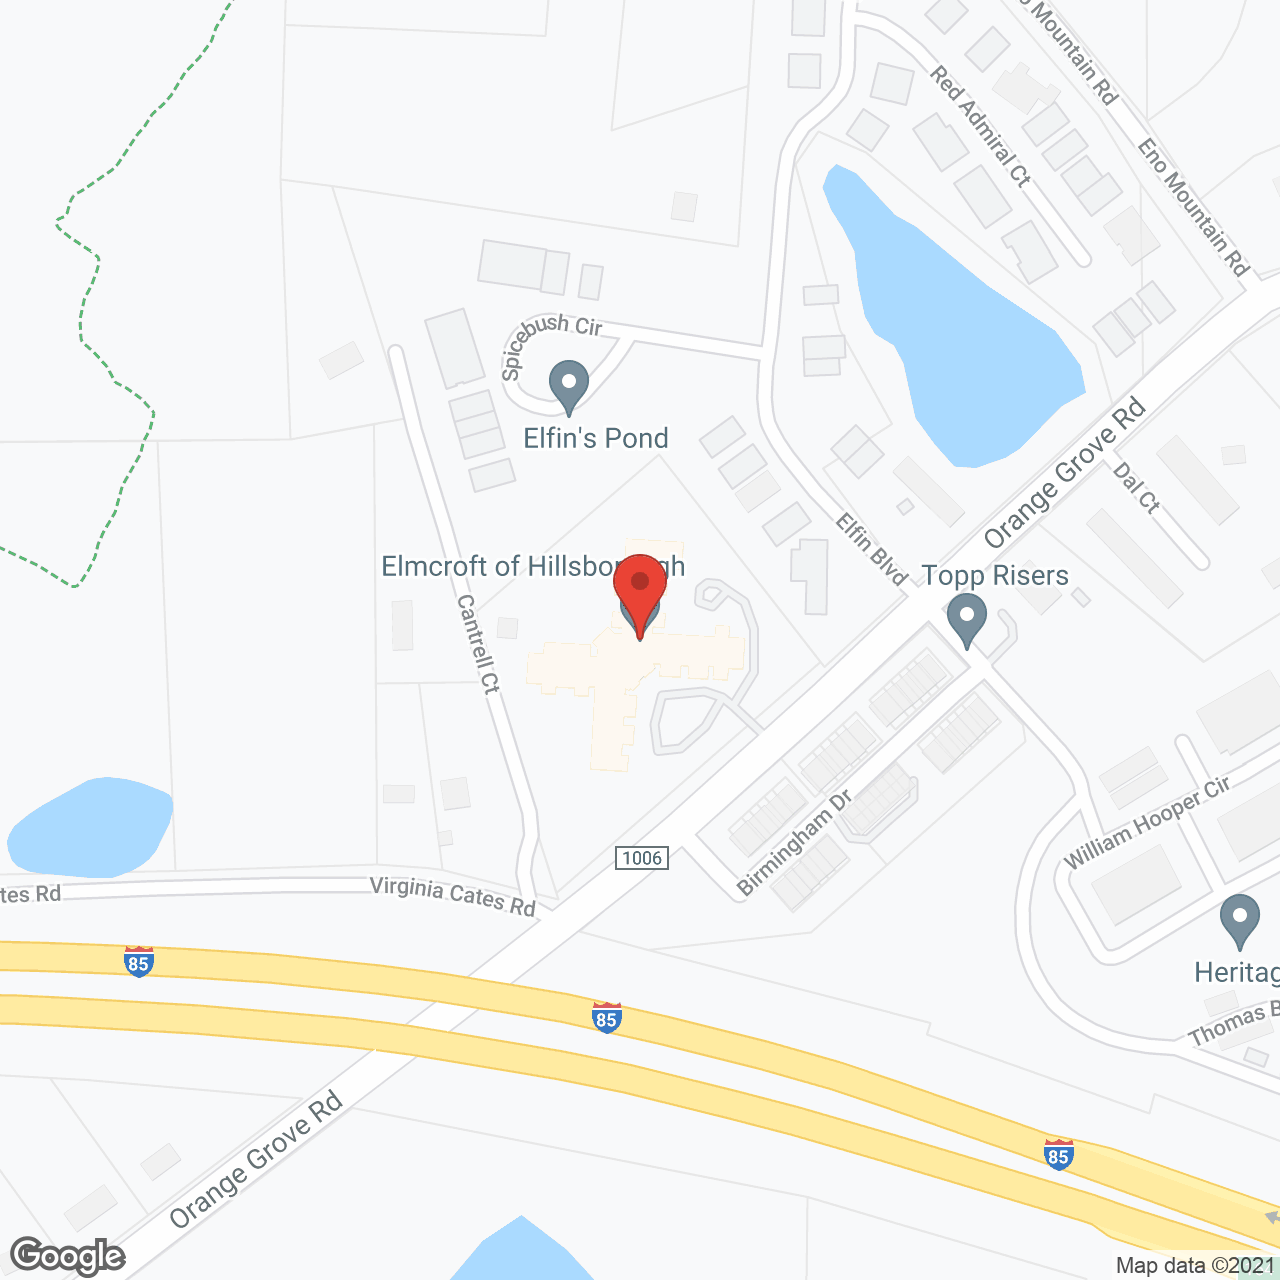 TerraBella Hillsborough in google map